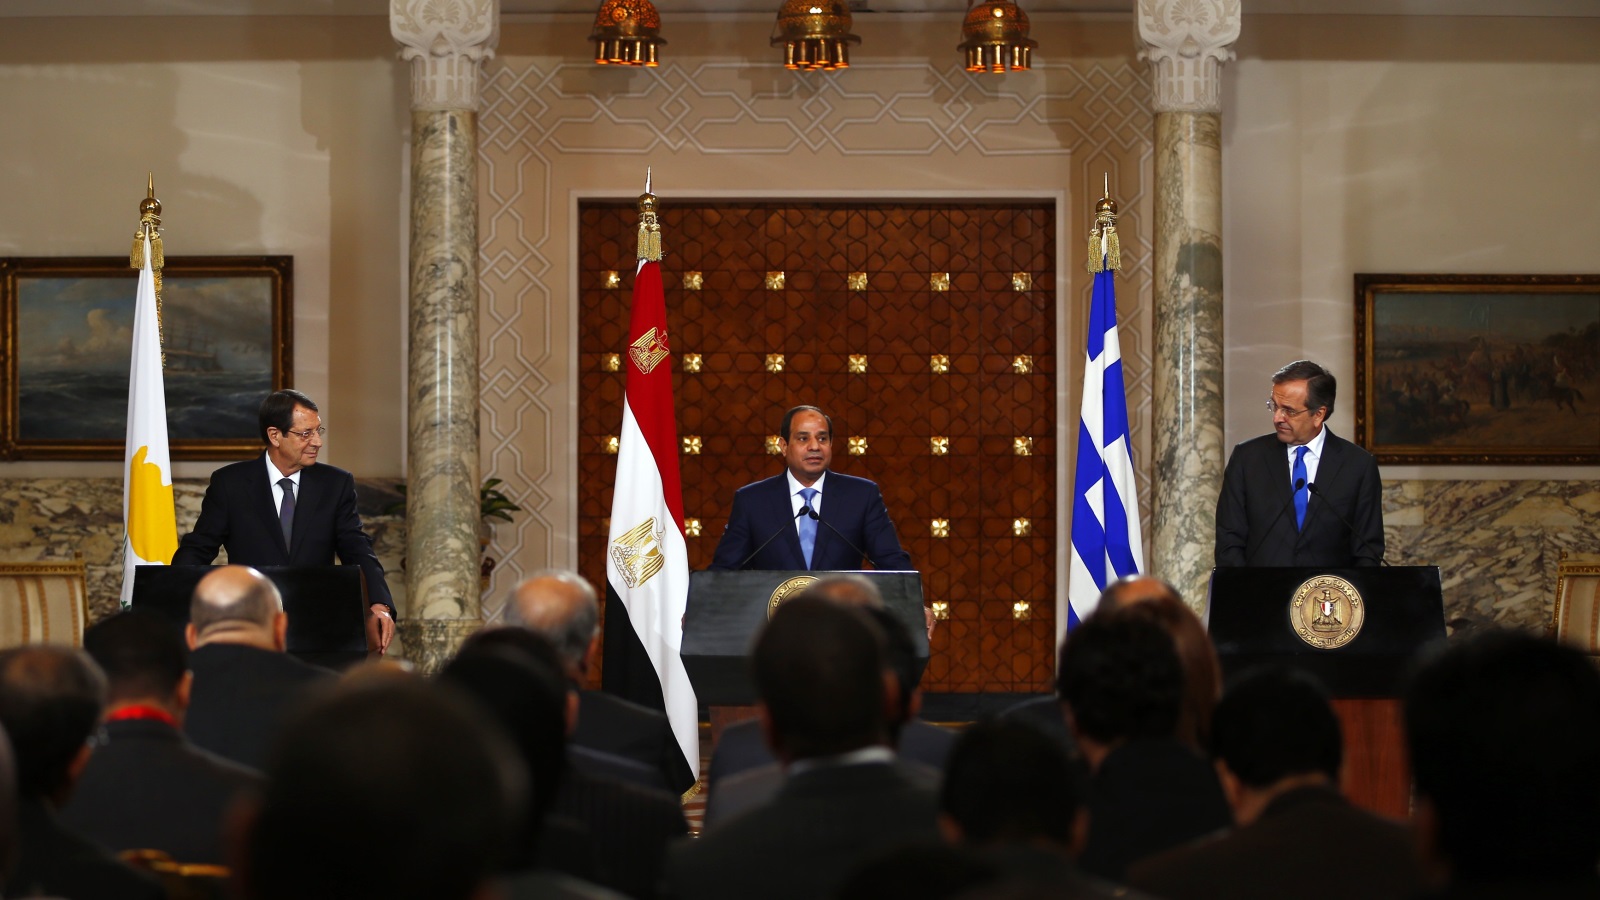 الرئيس المصري عبد الفتاح السيسي مع الرئيس القبرصي نيكوس اناستاسيادس ورئيس الوزراء اليوناني أنطوناس ساماراس (رويترز)